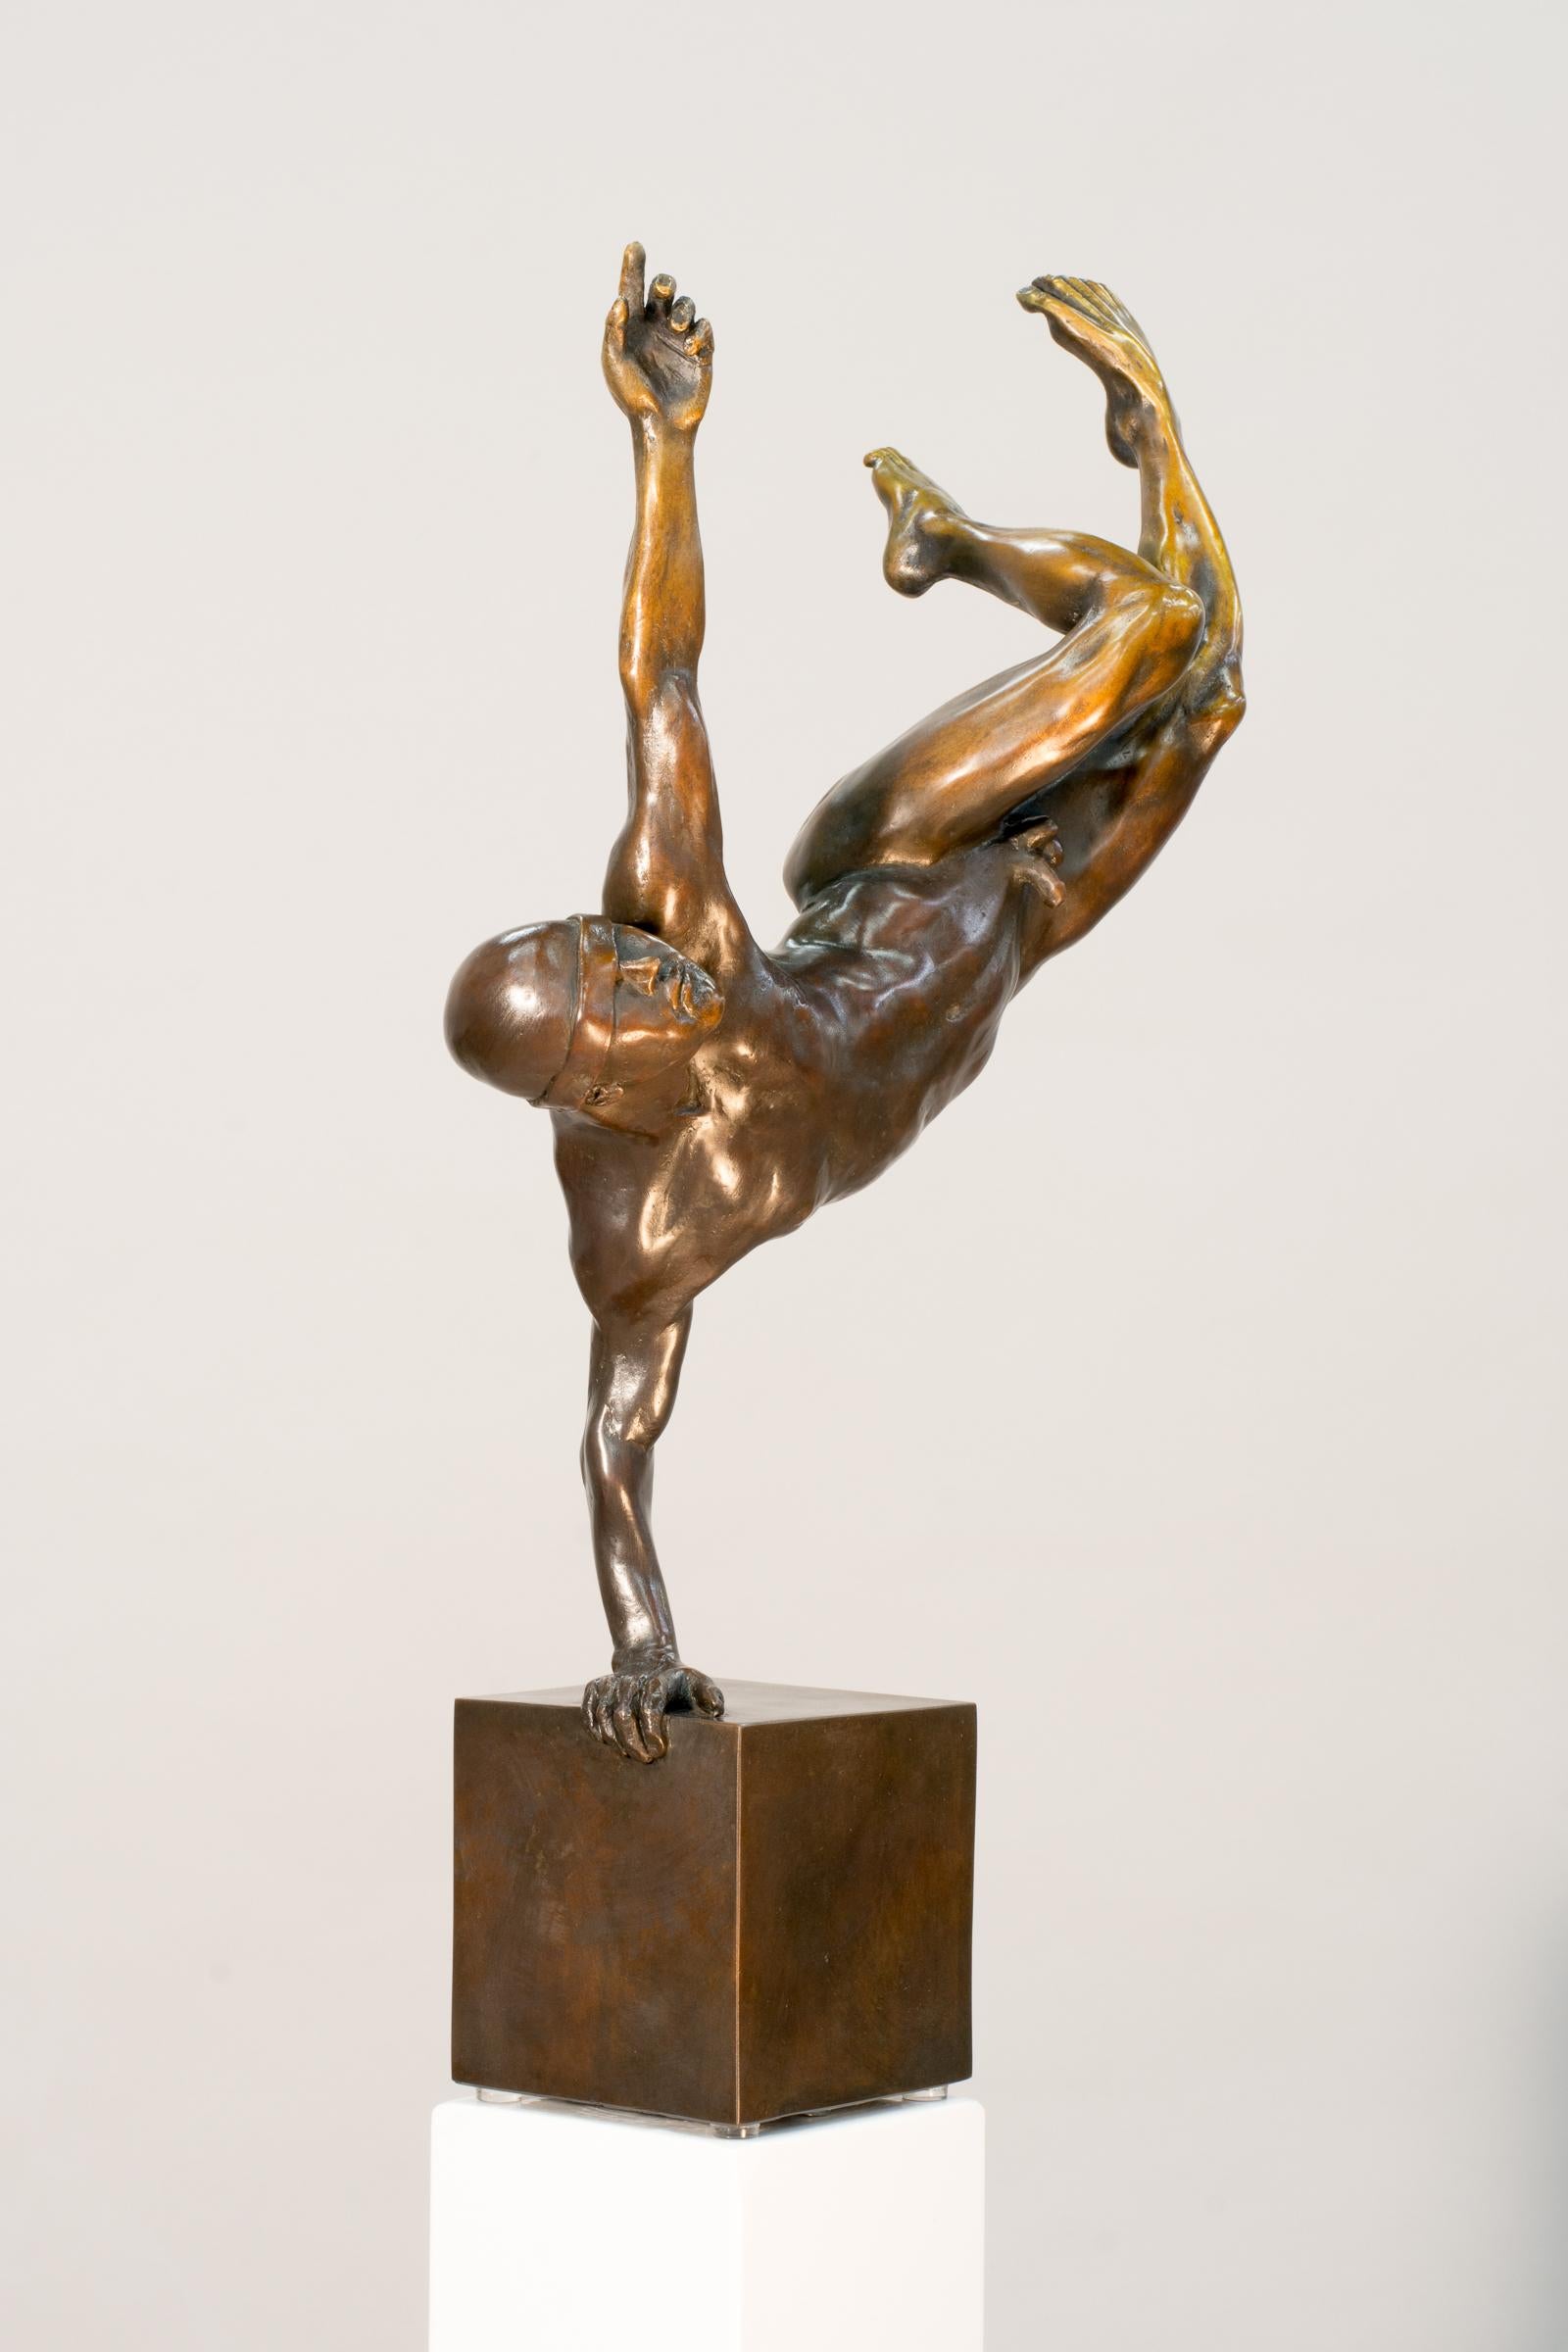 William Hung schafft dynamische, ausdrucksstarke und zugleich elegante Skulpturen, die sich mit dem menschlichen Dasein auseinandersetzen. In diesem intimen Werk aus reicher Bronze balanciert ein Athlet auf einer Hand, wobei sein nackter,